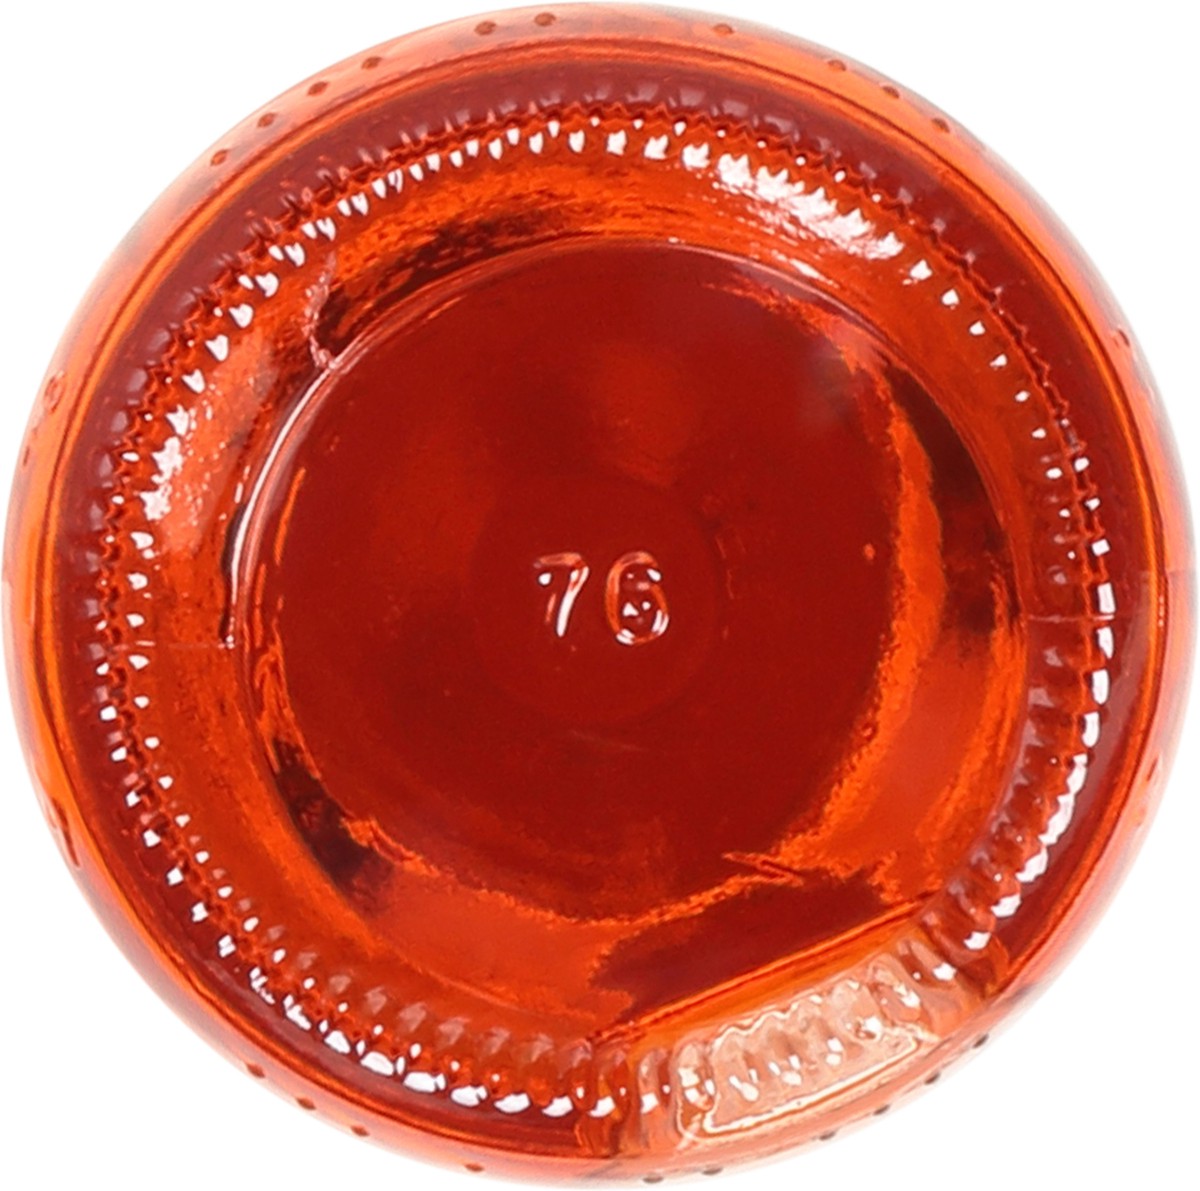 slide 5 of 12, Seagram's Bahama Mama Malt Beverage 11.2 fl oz Bottle, 11.2 fl oz